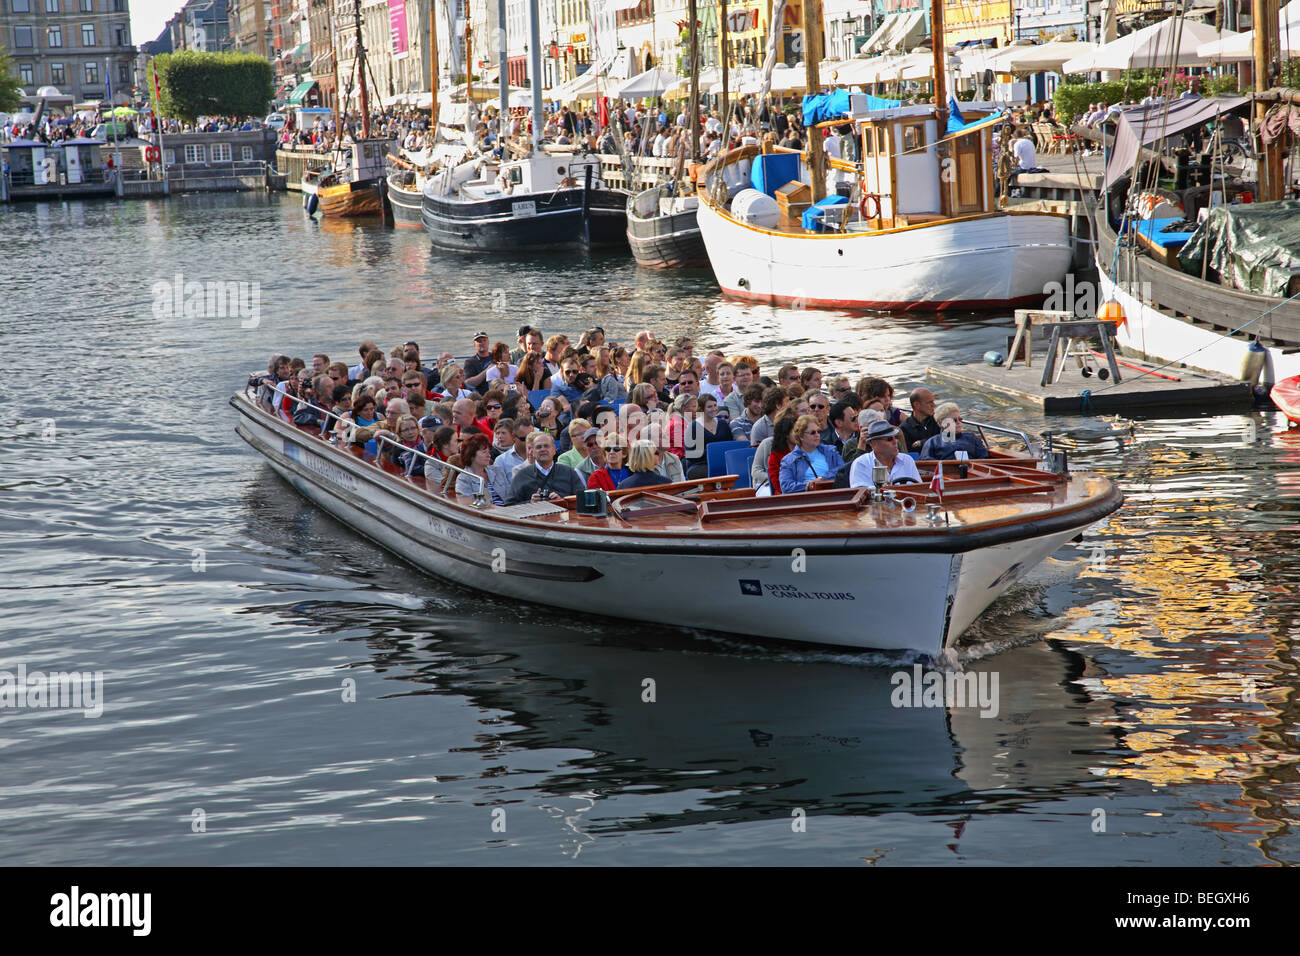 Eine Grachtenrundfahrt Kreuzfahrtschiff verlassen Nyhavn in Kopenhagen eine Stadtrundfahrt direkt unter den vielen Restaurants am Wasser Stockfoto